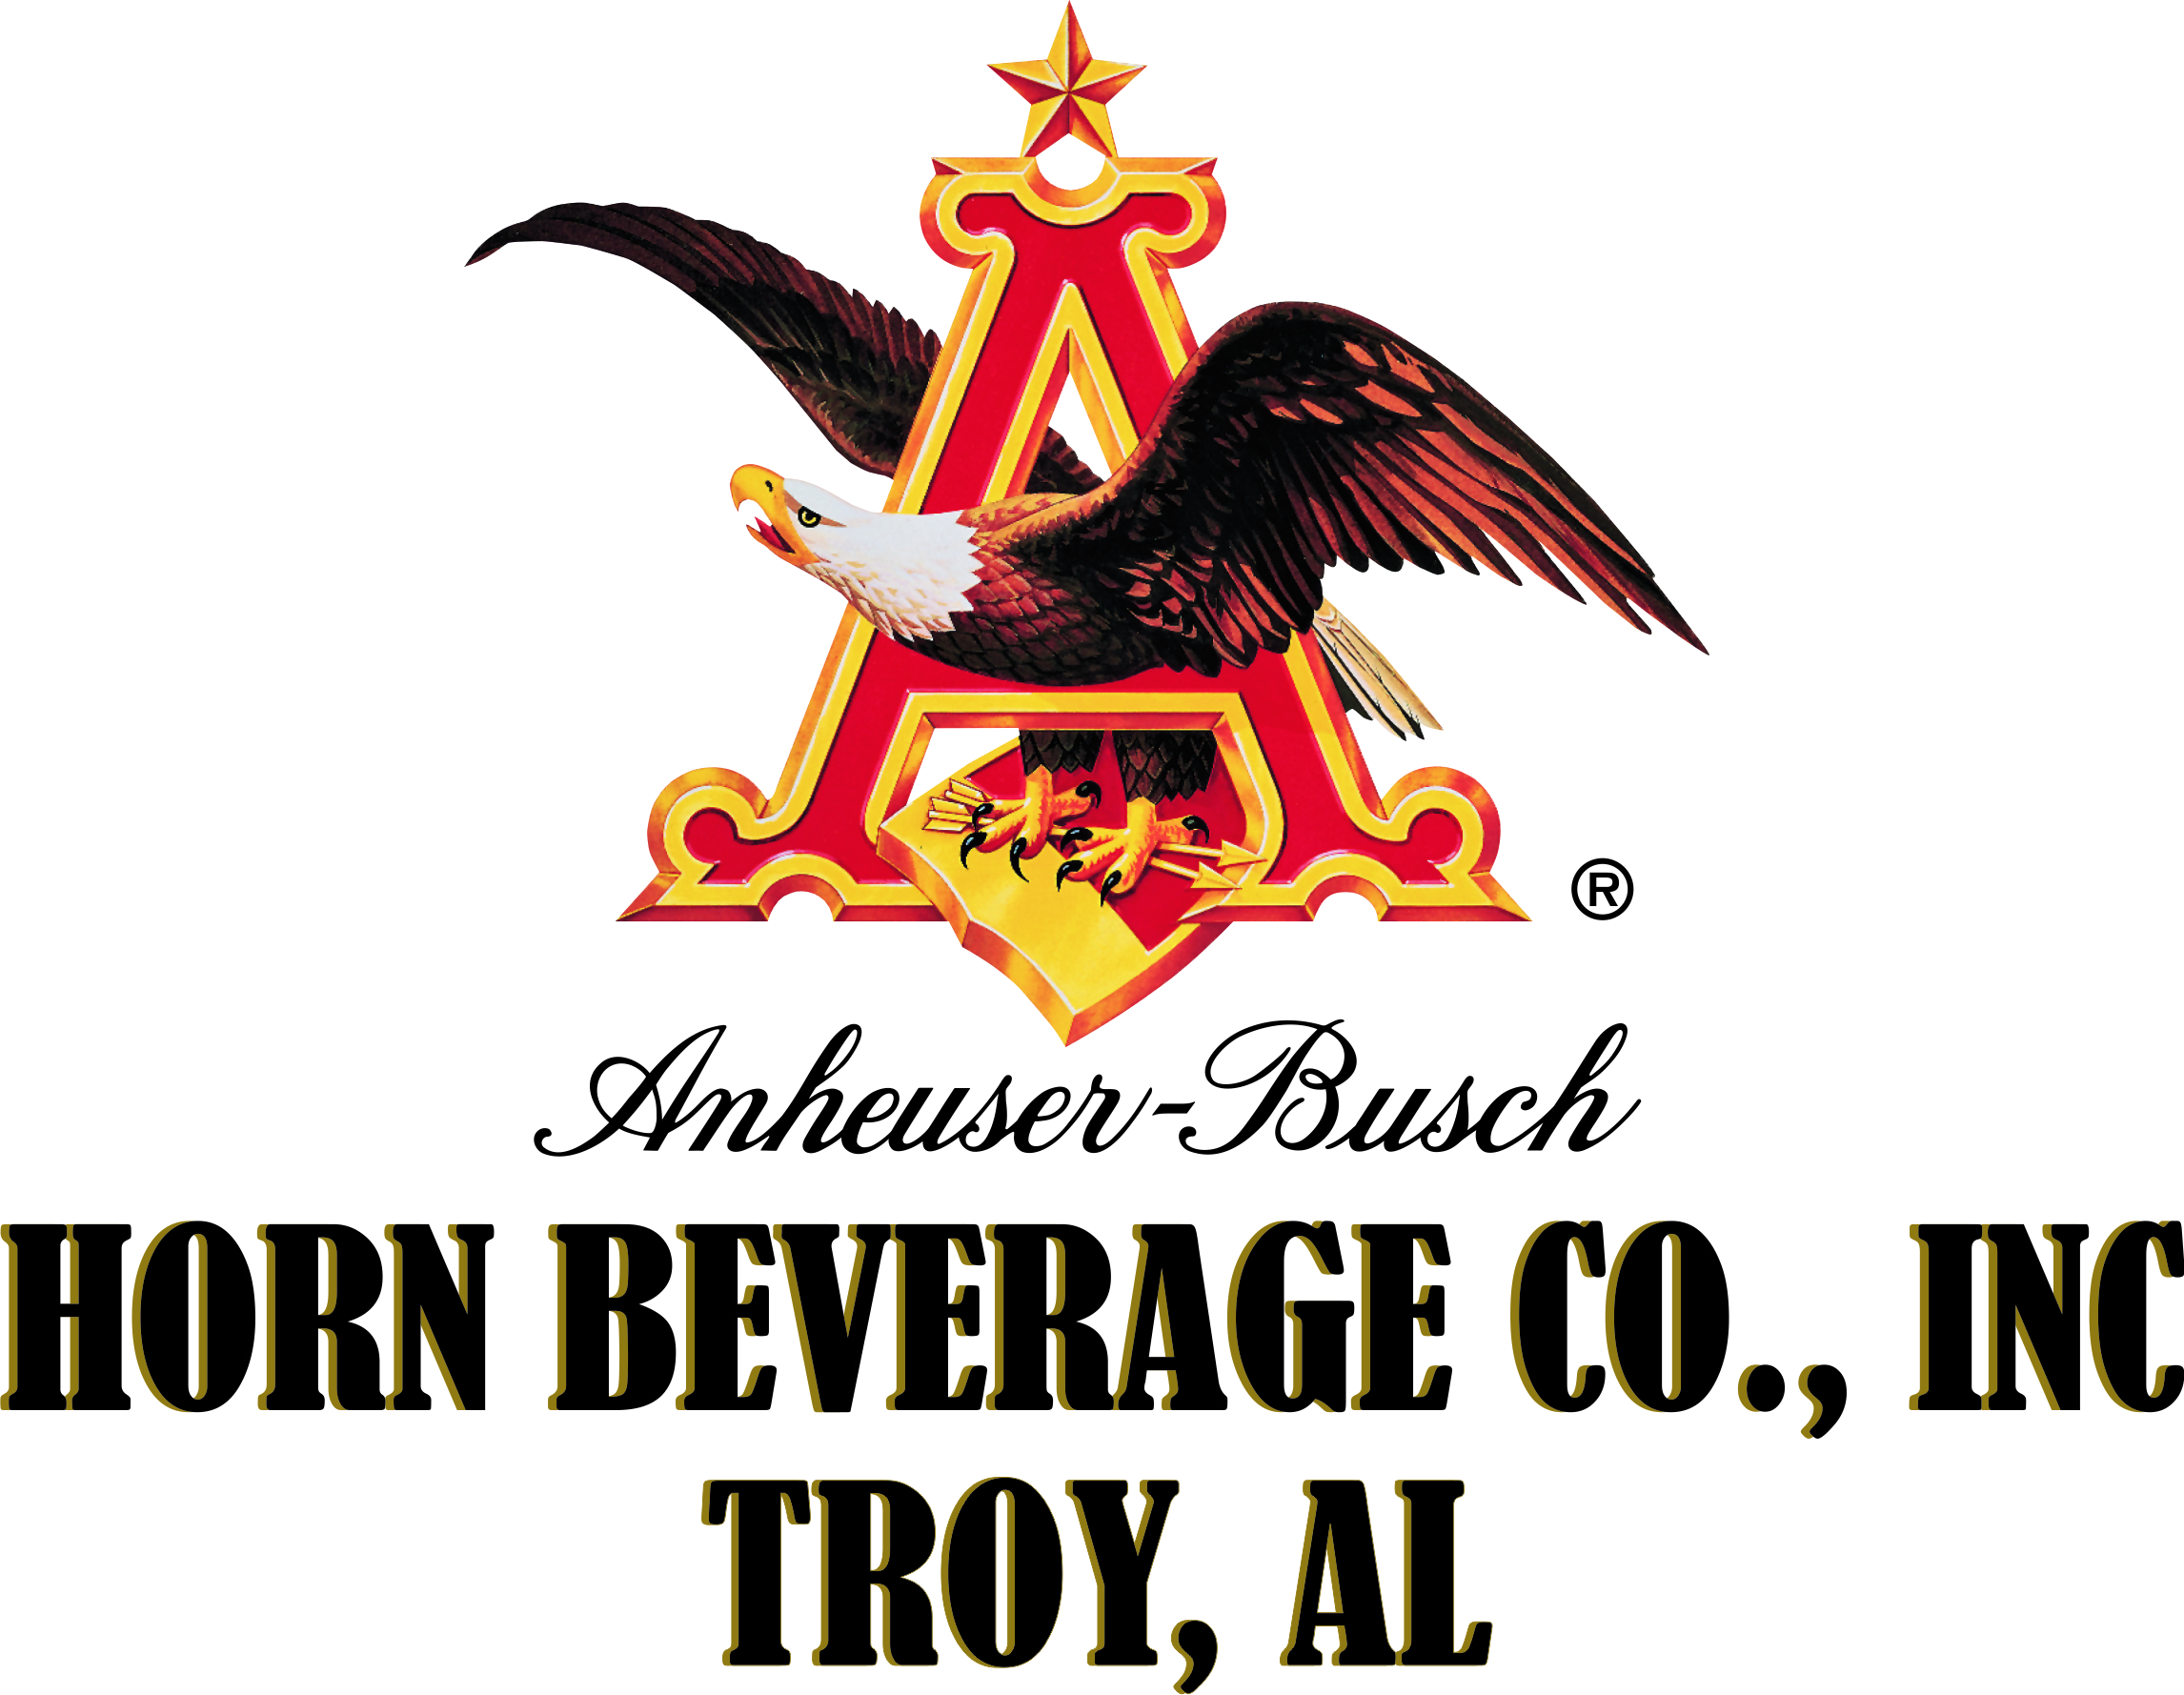 Horn Beverage Co. Inc. Troy, AL